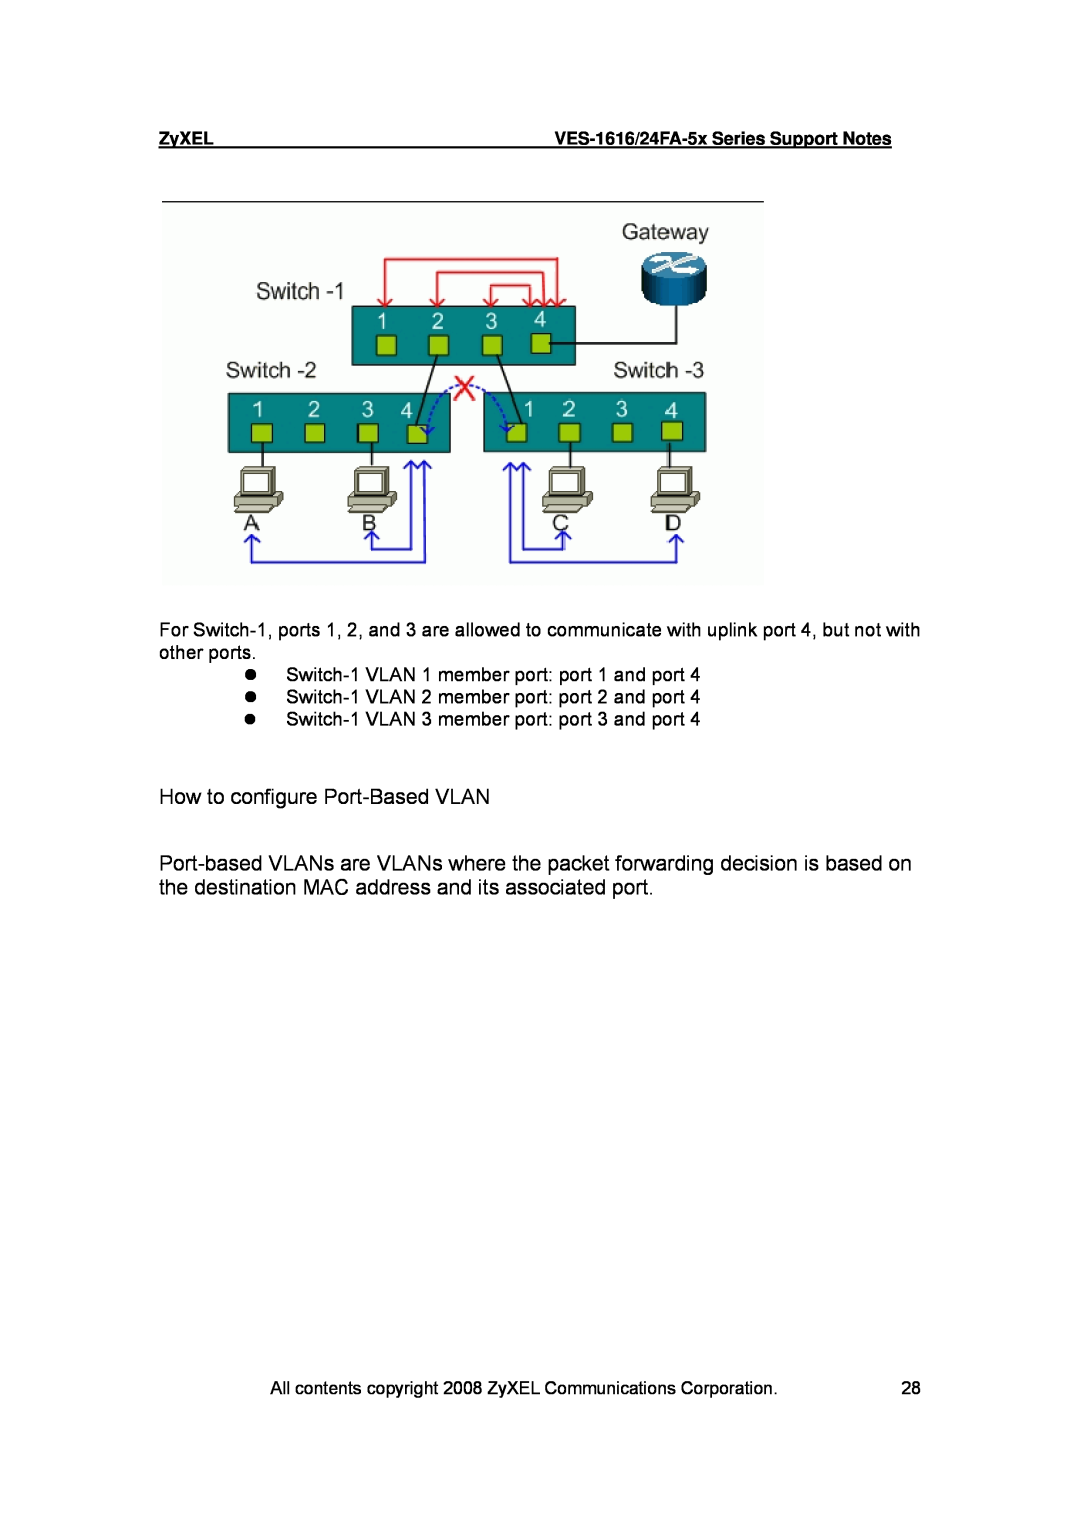 ZyXEL Communications VES-1616 manual z Switch-1 VLAN 1 member port port 1 and port 